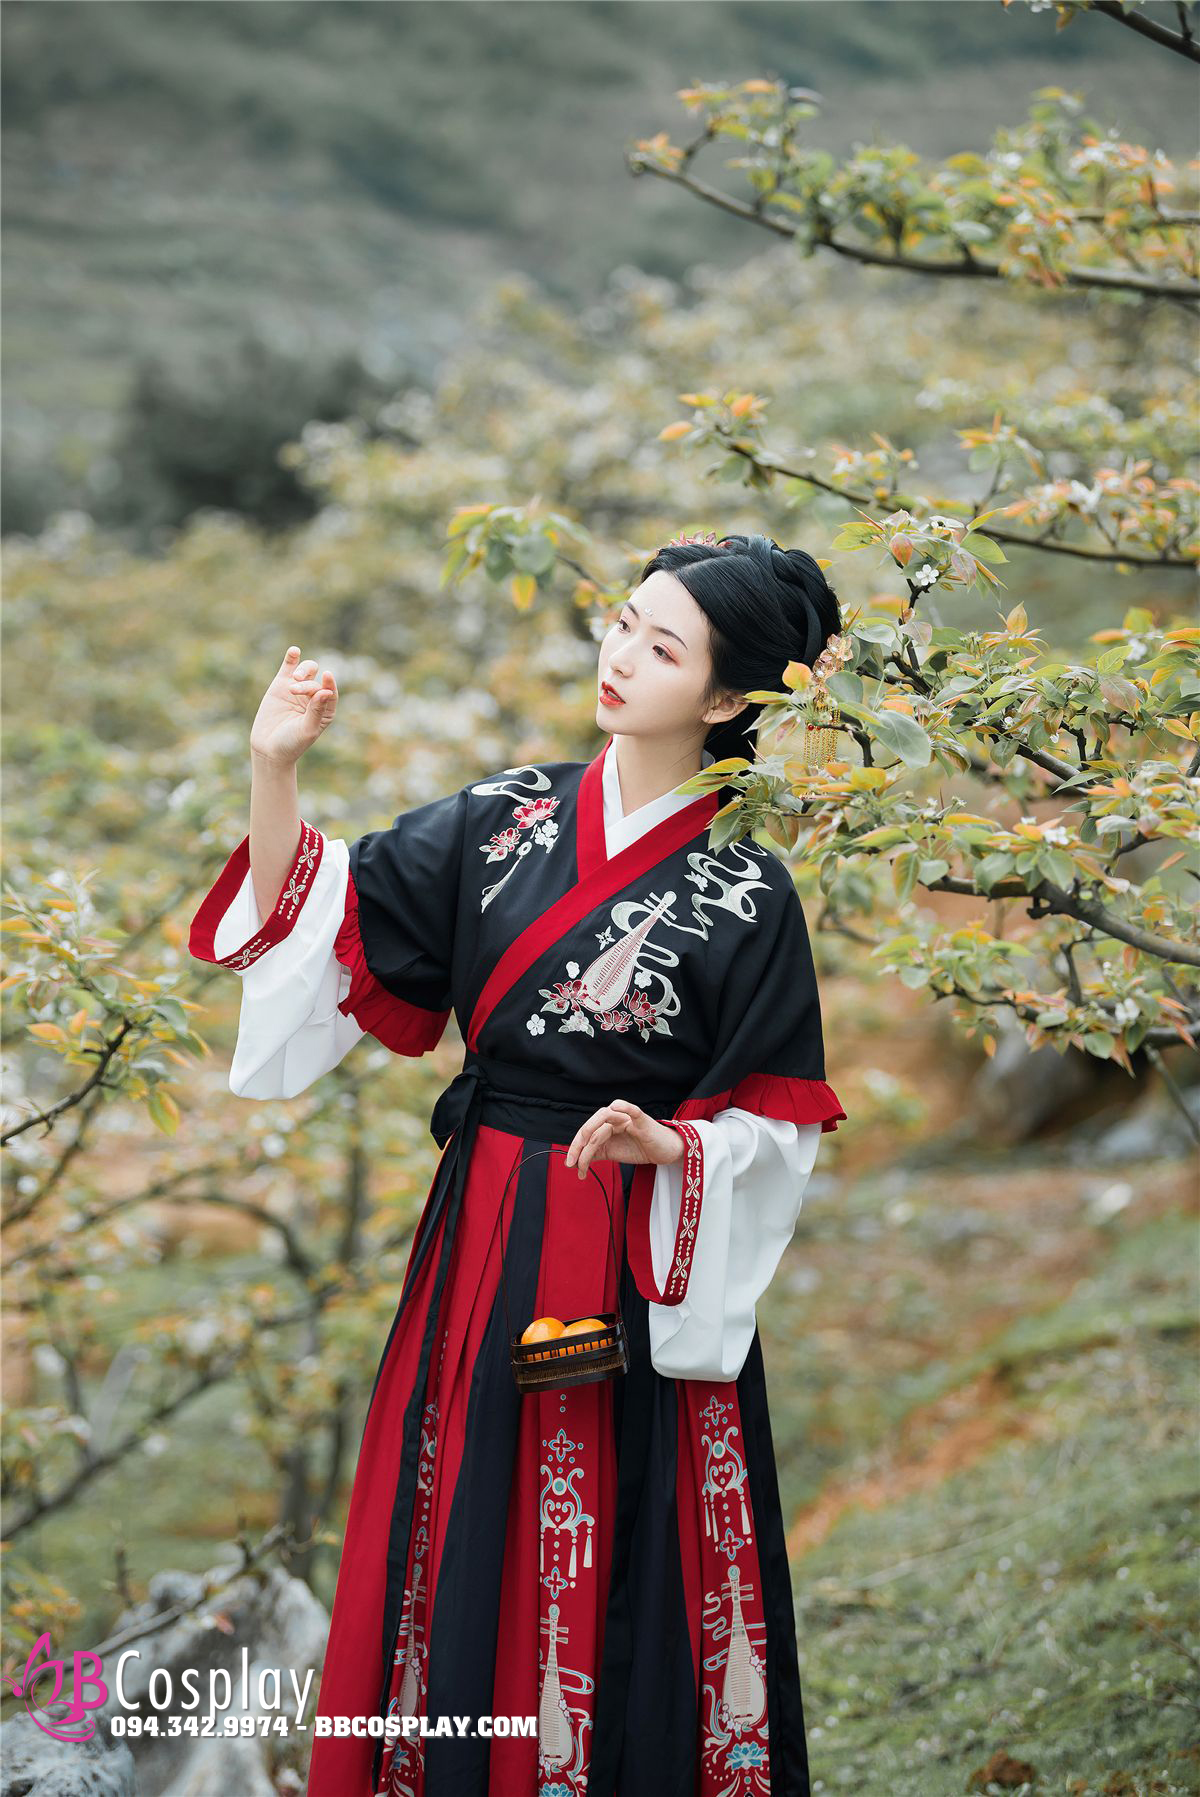 với màu đỏ và đen kết hợp tưởng chừng không phù hợp nhưng lại tạo cho bộ Hán Phục Đôn Hoàng Đoạn Tịnh trở nên đặc sắc và hấp dẫn